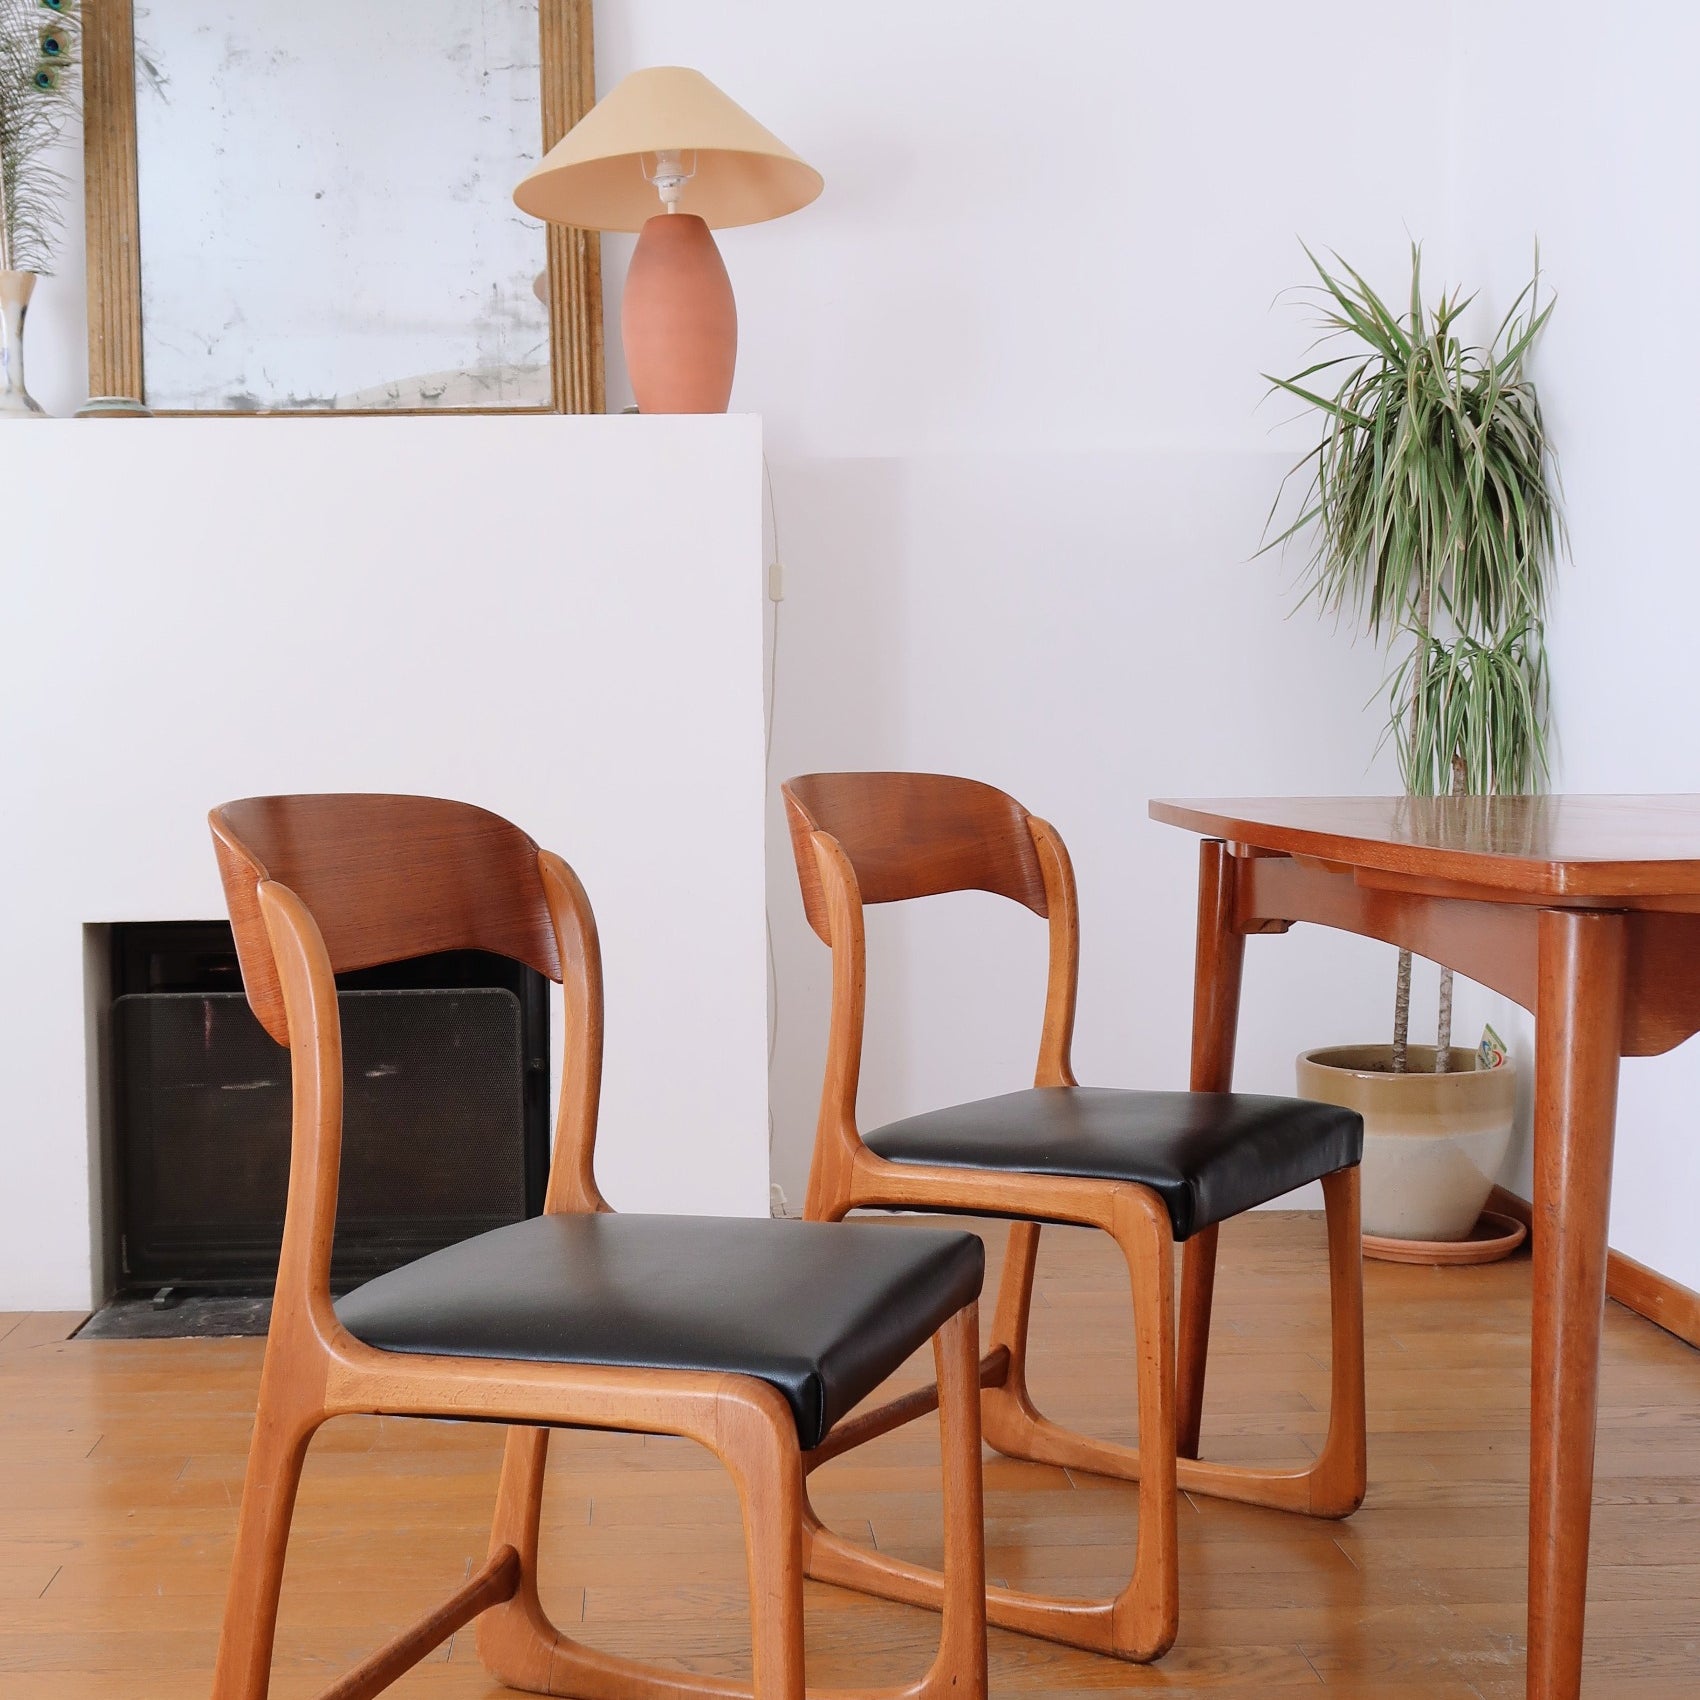 paire 2 chaises traineau baumann skaï noir cuir vintage scandinave teck années 60 danois teck palissandre